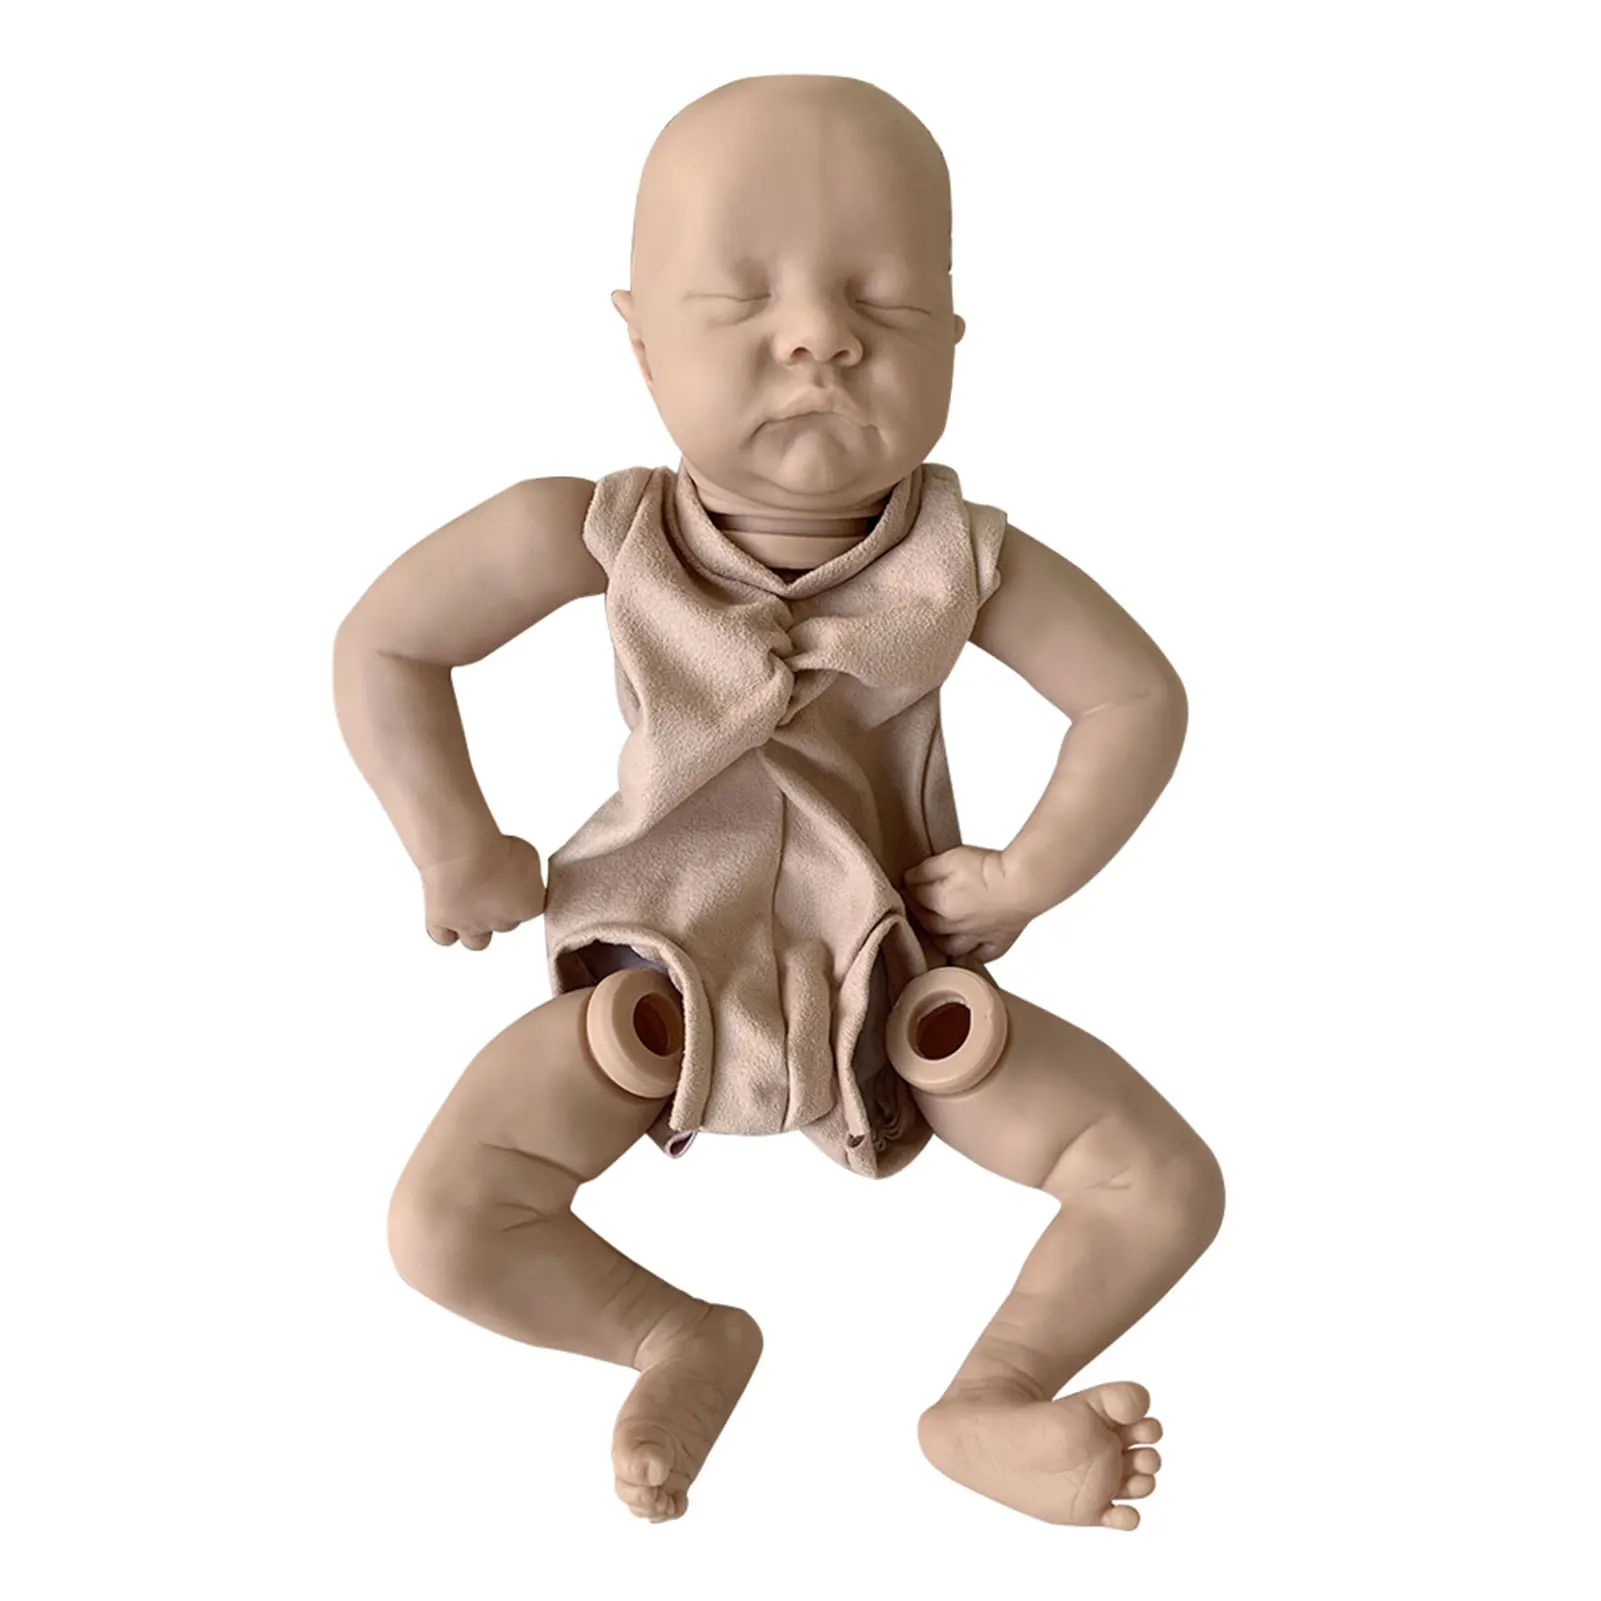 

Мягкая силиконовая самосборка для ролевых игр, Реалистичная Нетоксичная кукла-Реборн, 21 дюйм, с движущимися руками на ощупь, в подарок